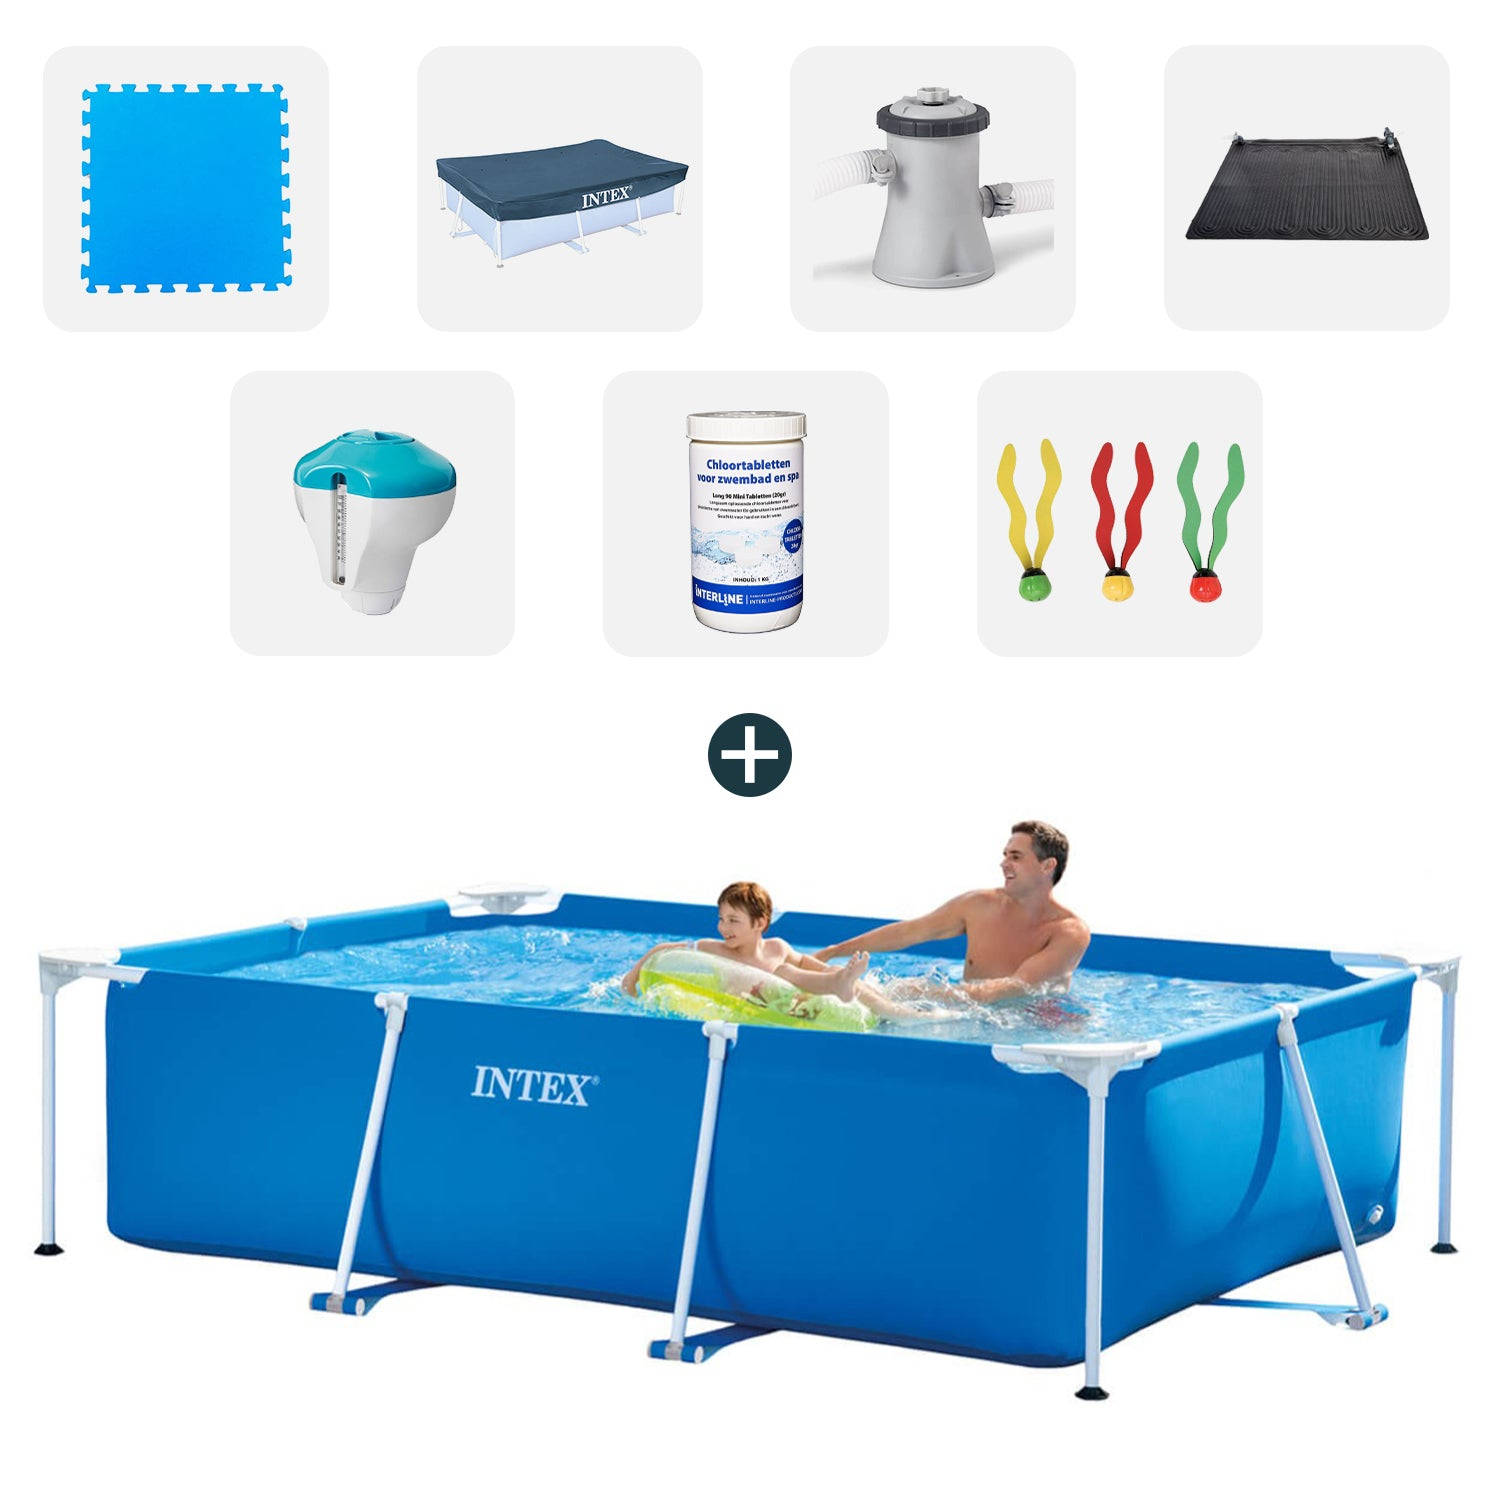 Intex zwembad - Complete set - 260x160x65 cm - Inclusief zwembadtegels - Afdekzeil - Filterpomp - Solarmat - Chloordrijver+thermometer - Chloortabletten - Duikspeelgoed